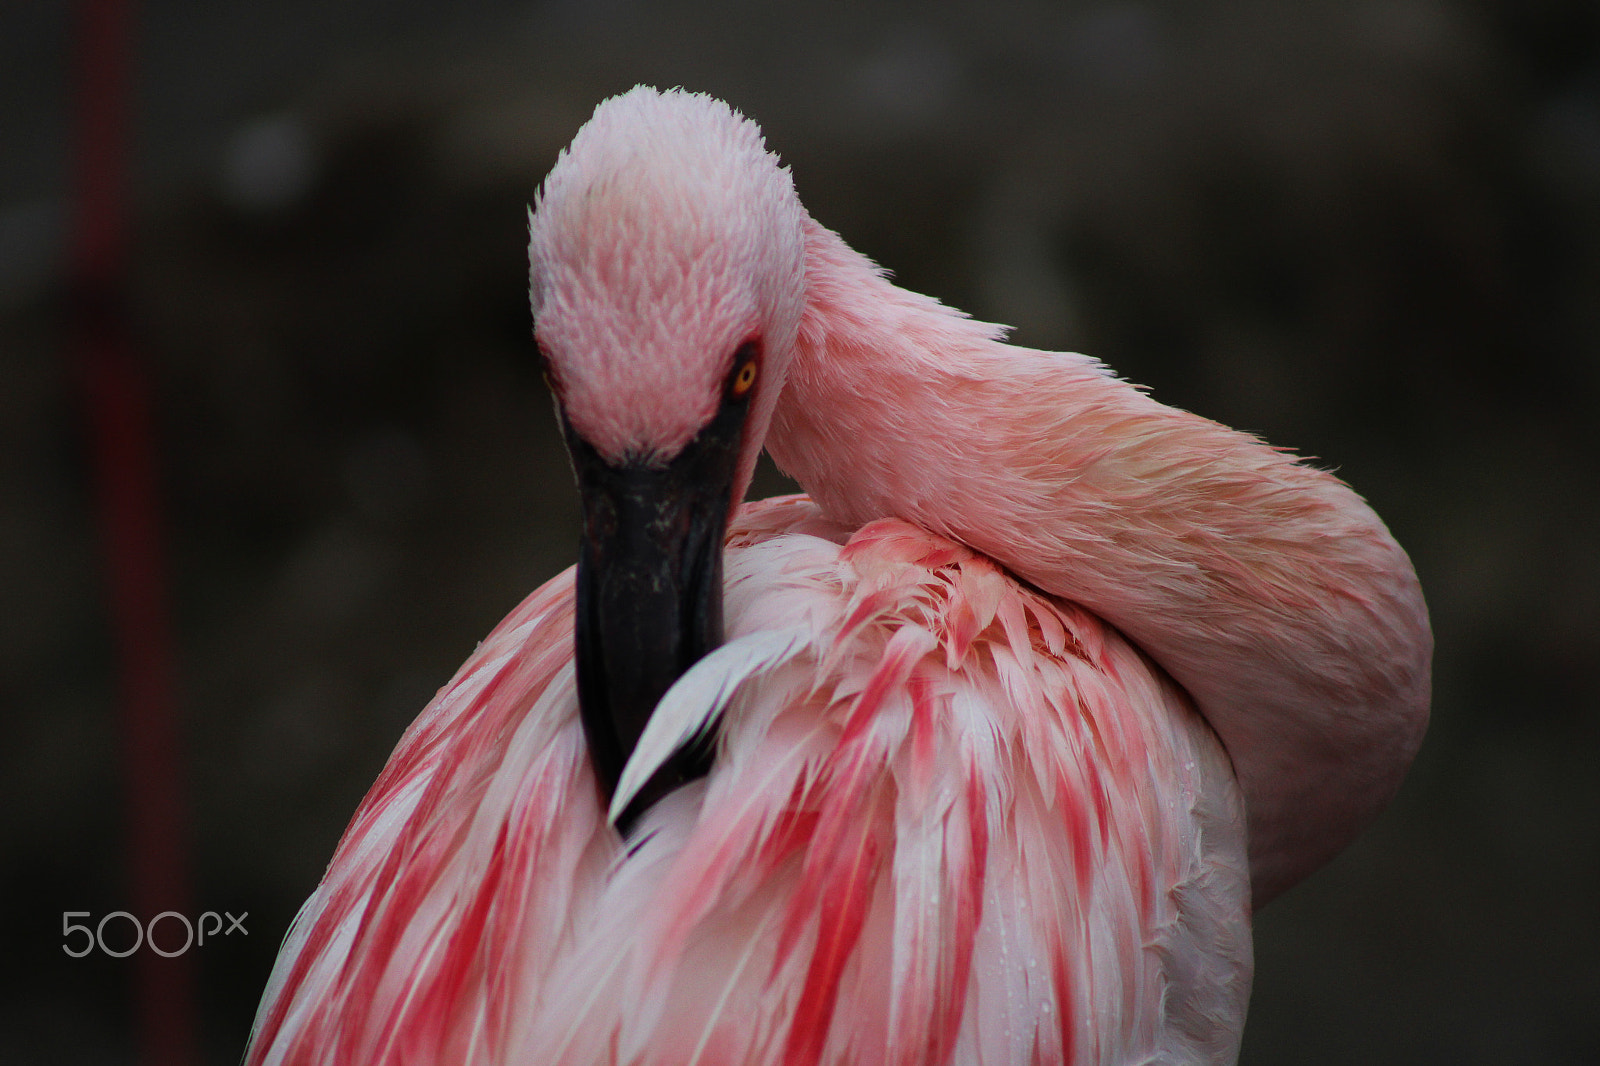 Canon EOS 100D (EOS Rebel SL1 / EOS Kiss X7) sample photo. Flamingo covert photography